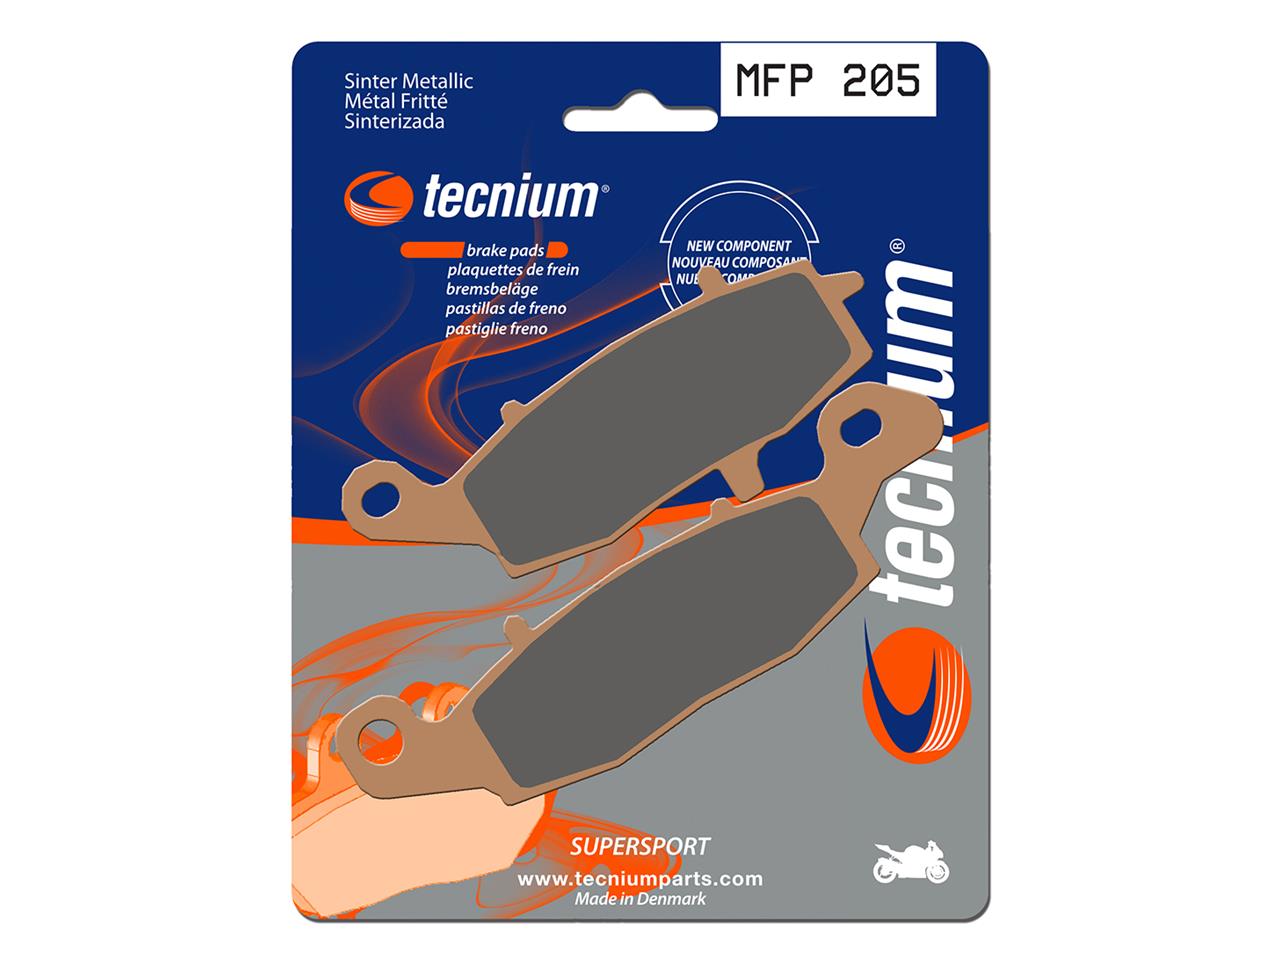 Plaquettes de frein Performance Trail MFP205 en métal fritté, marque Tecnium